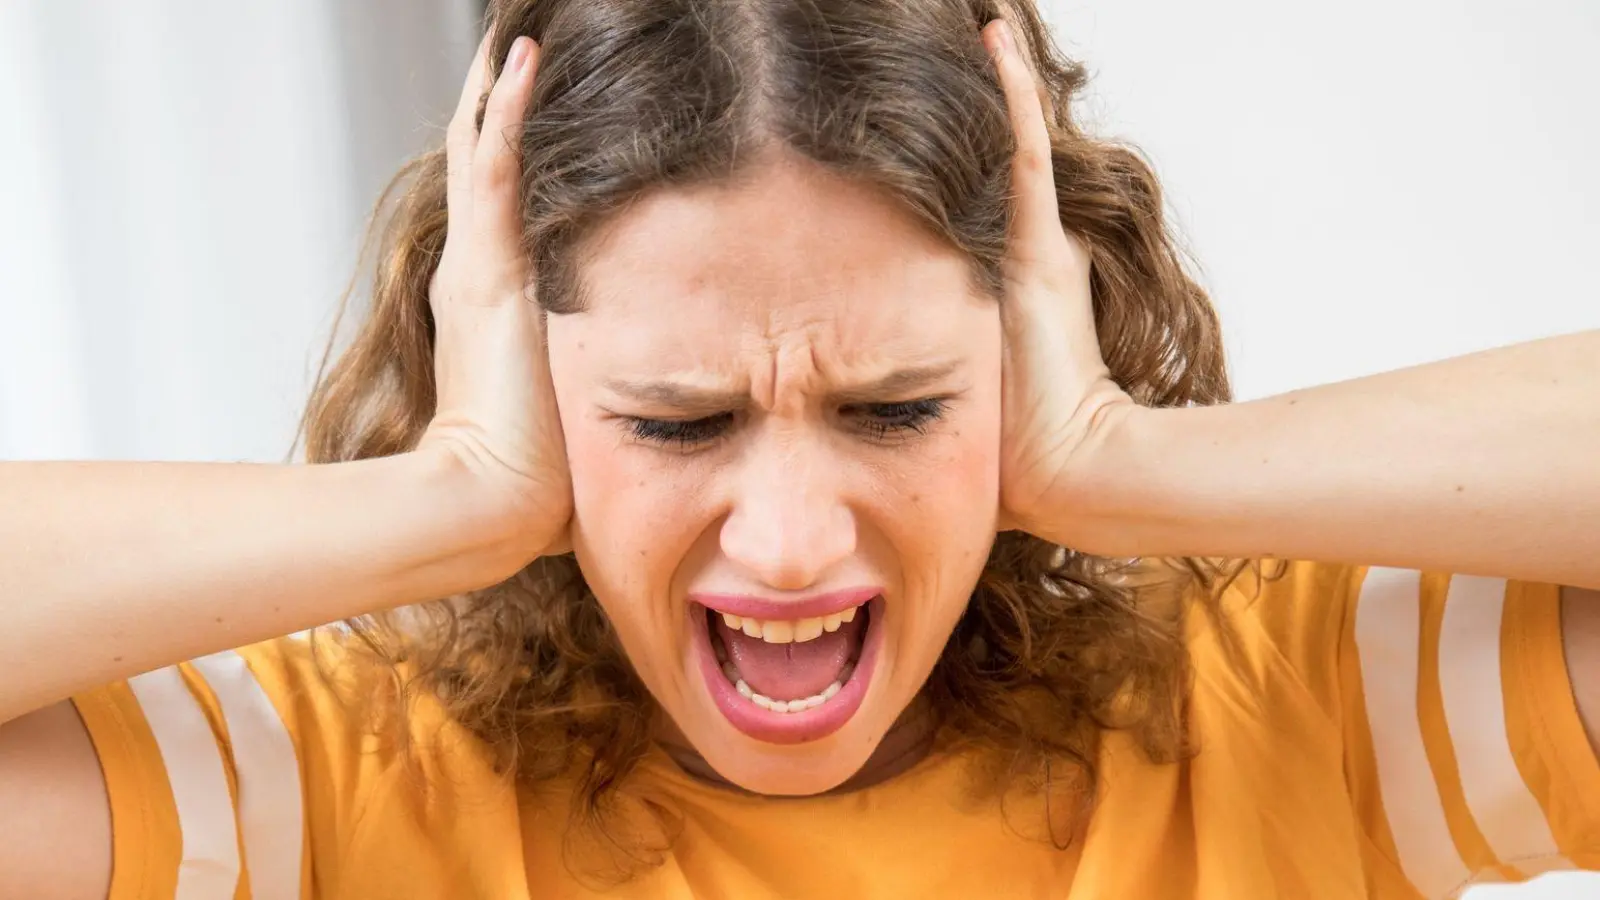 Nützt Schreien? Eine neue Studie zeigt, welche Methoden tatsächlich helfen, die Wut zu dämpfen - und welche eher kontraproduktiv sind. (Foto: Christin Klose/dpa-tmn/dpa)